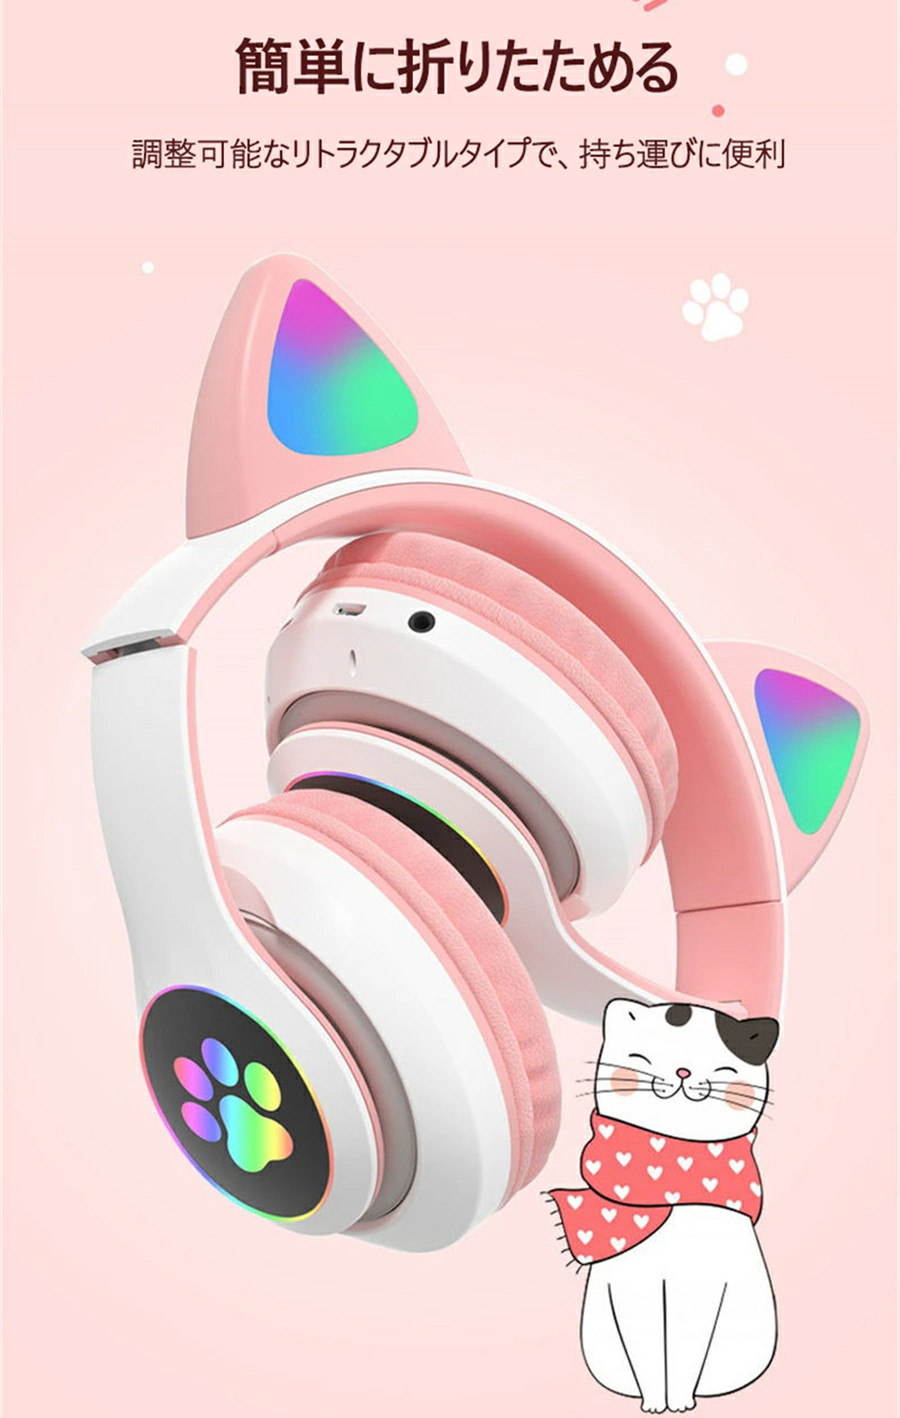 ネコ耳ヘッドホン 猫耳ヘッドフォン ゲーミングヘッドセット ねこみみ マイク付き ブルートゥース 折り畳み式 有線対応 無線 ワイヤレスヘッドホン  :sos032:Suguha Online Shop 通販 